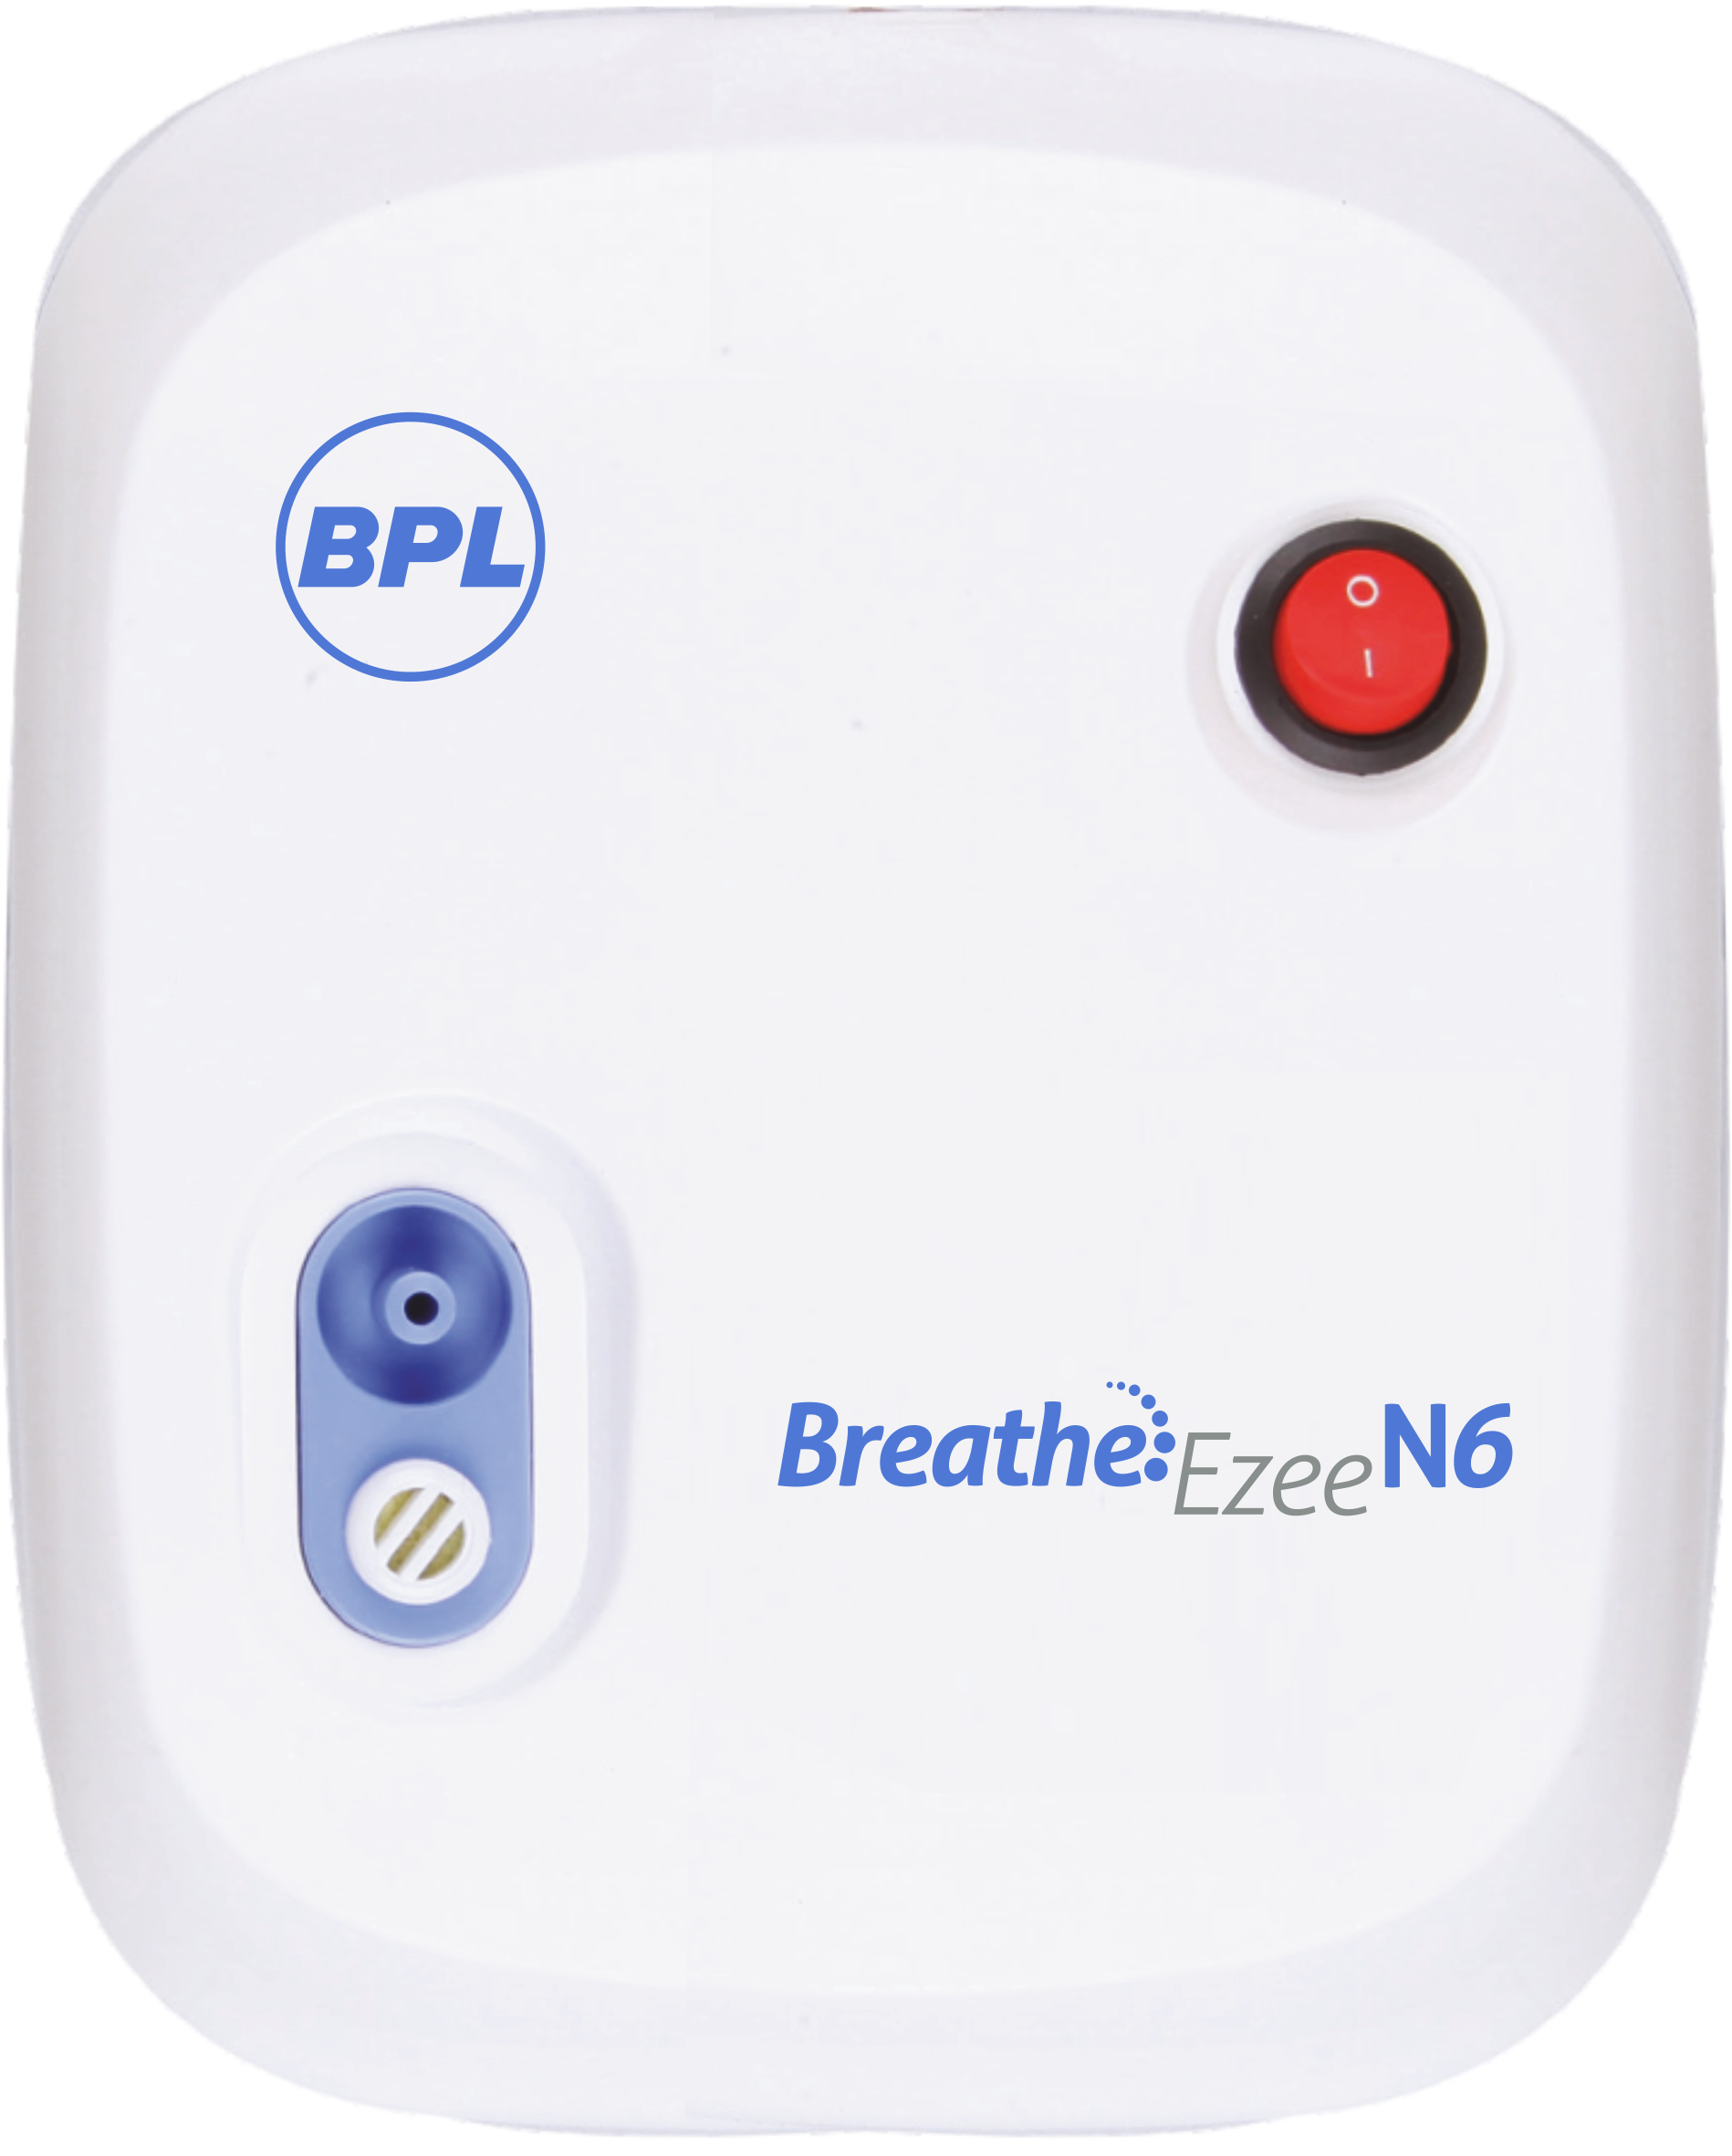 BPL Breathe Ezee N6 